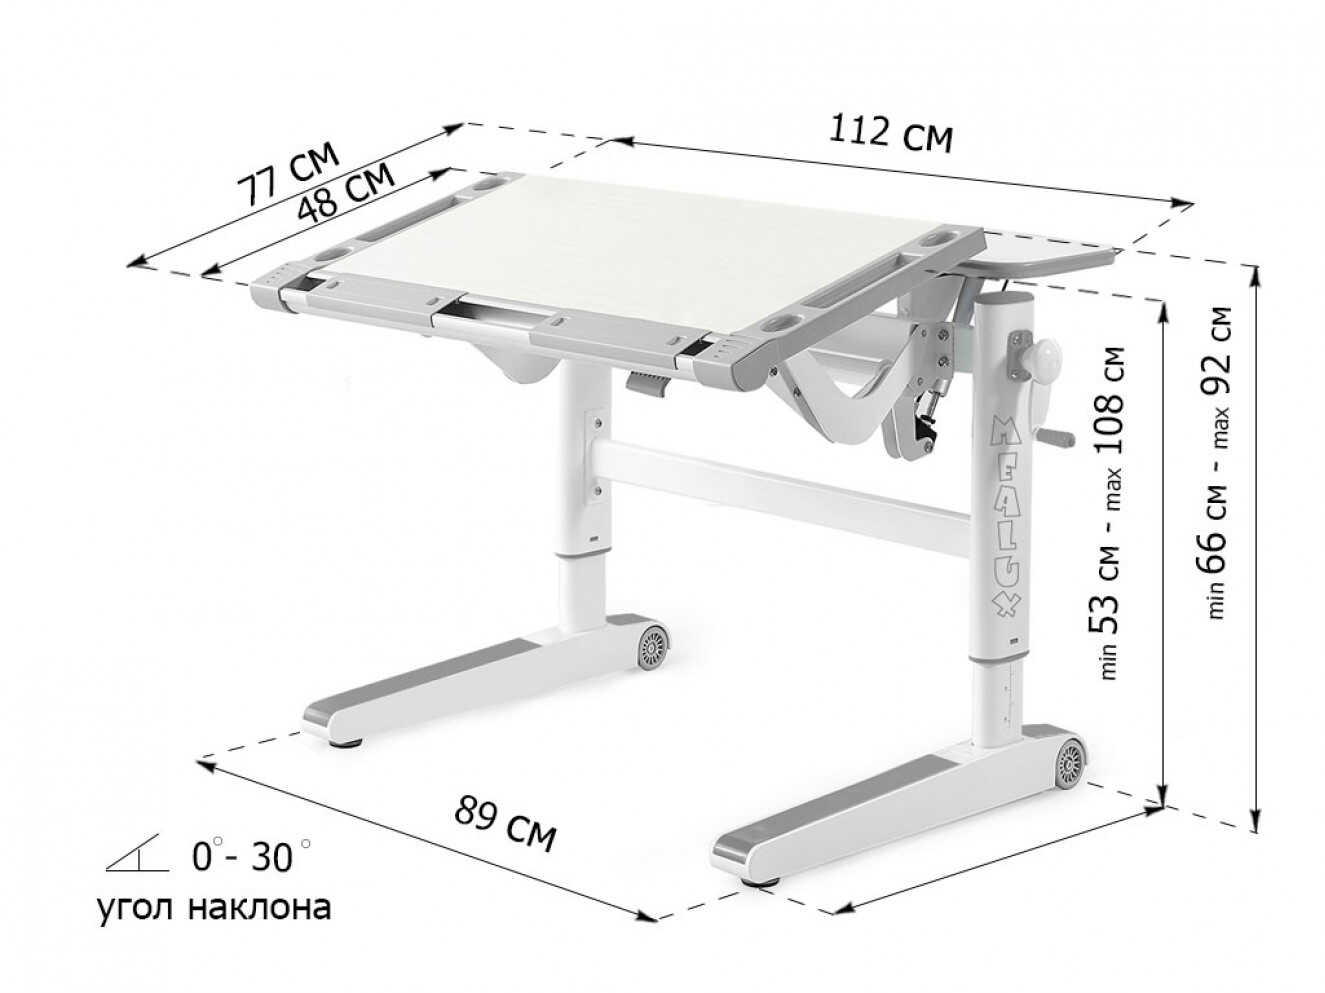 Дитячий стіл Mealux Ergowood L Multicolor MG (арт. BD-810 MG/MC)